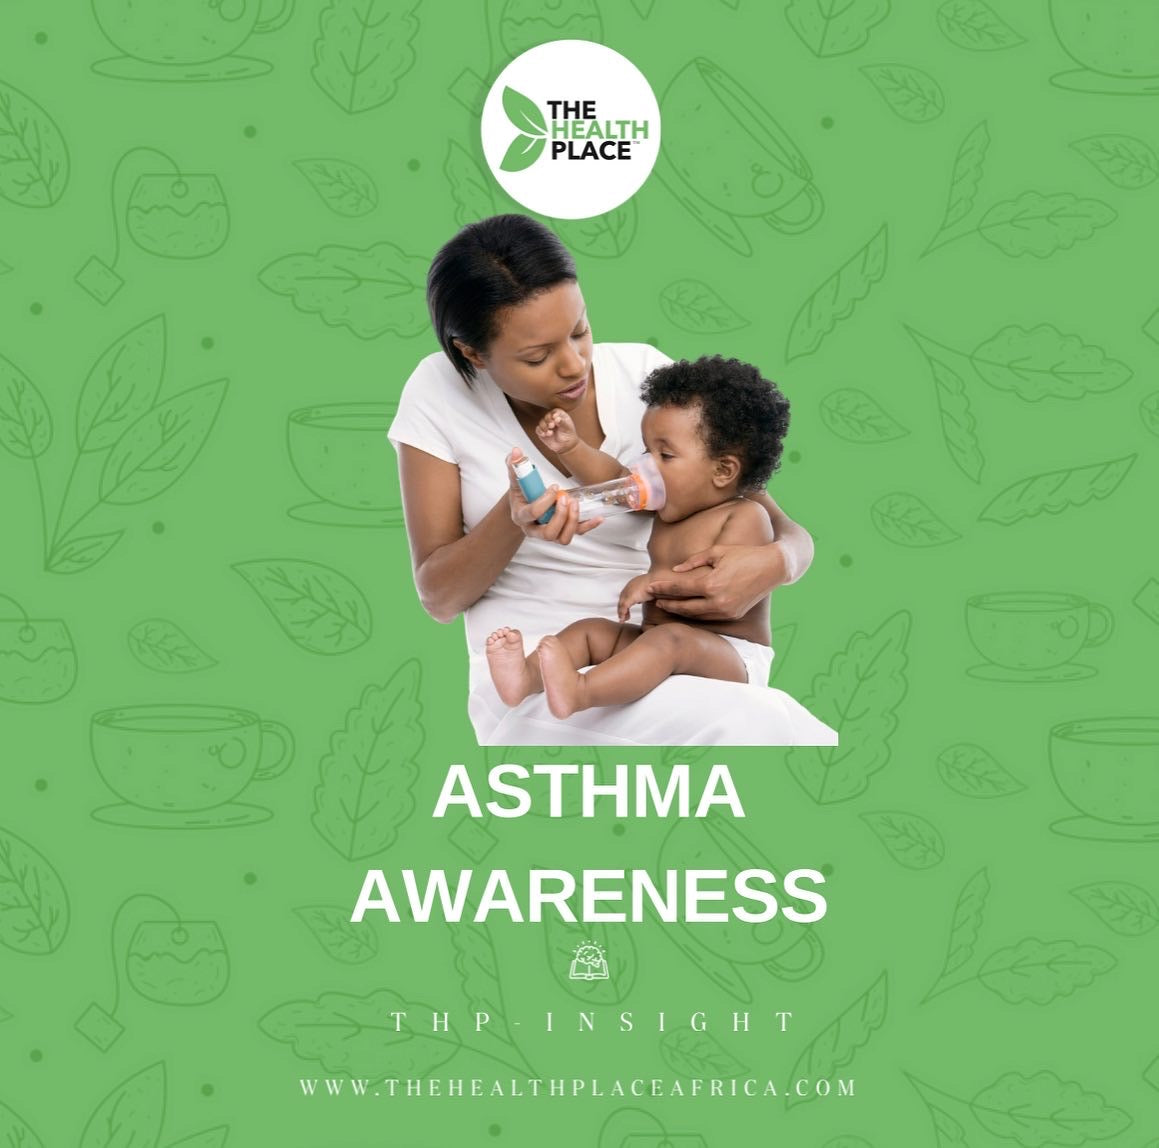 ASTHMA AWARENESS